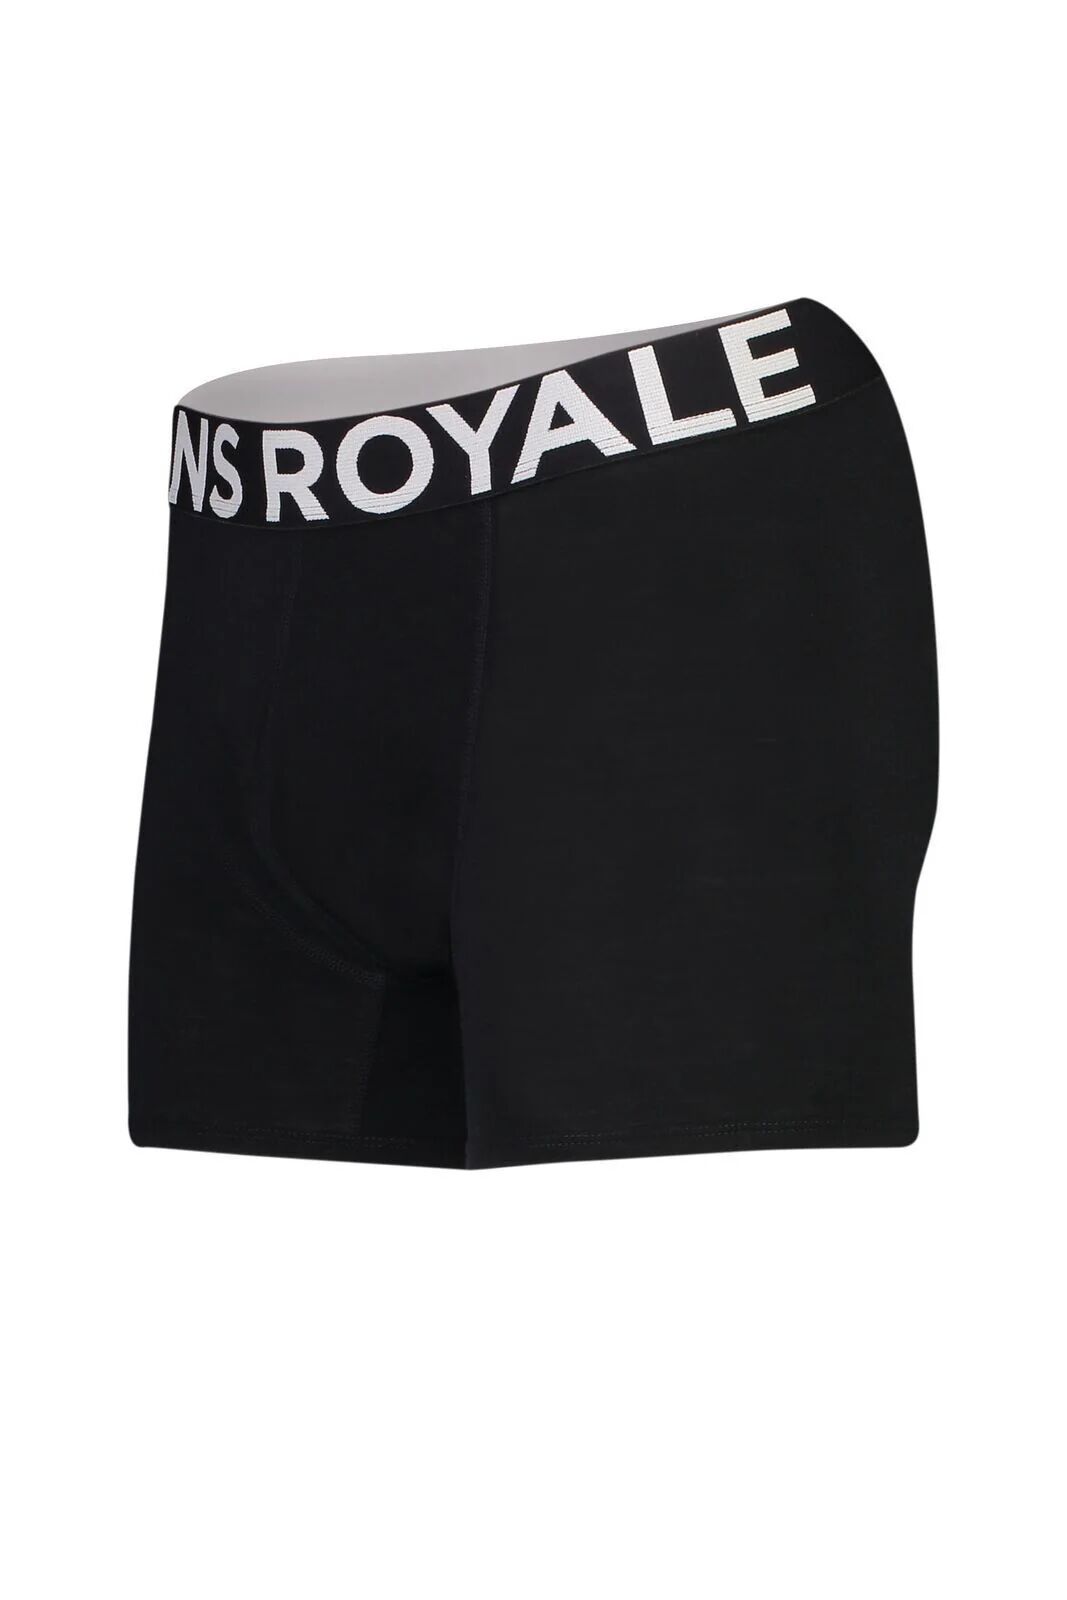 Mons Royale Men's Hold 'em Shorty Boxer - Merino wool, Black / XL